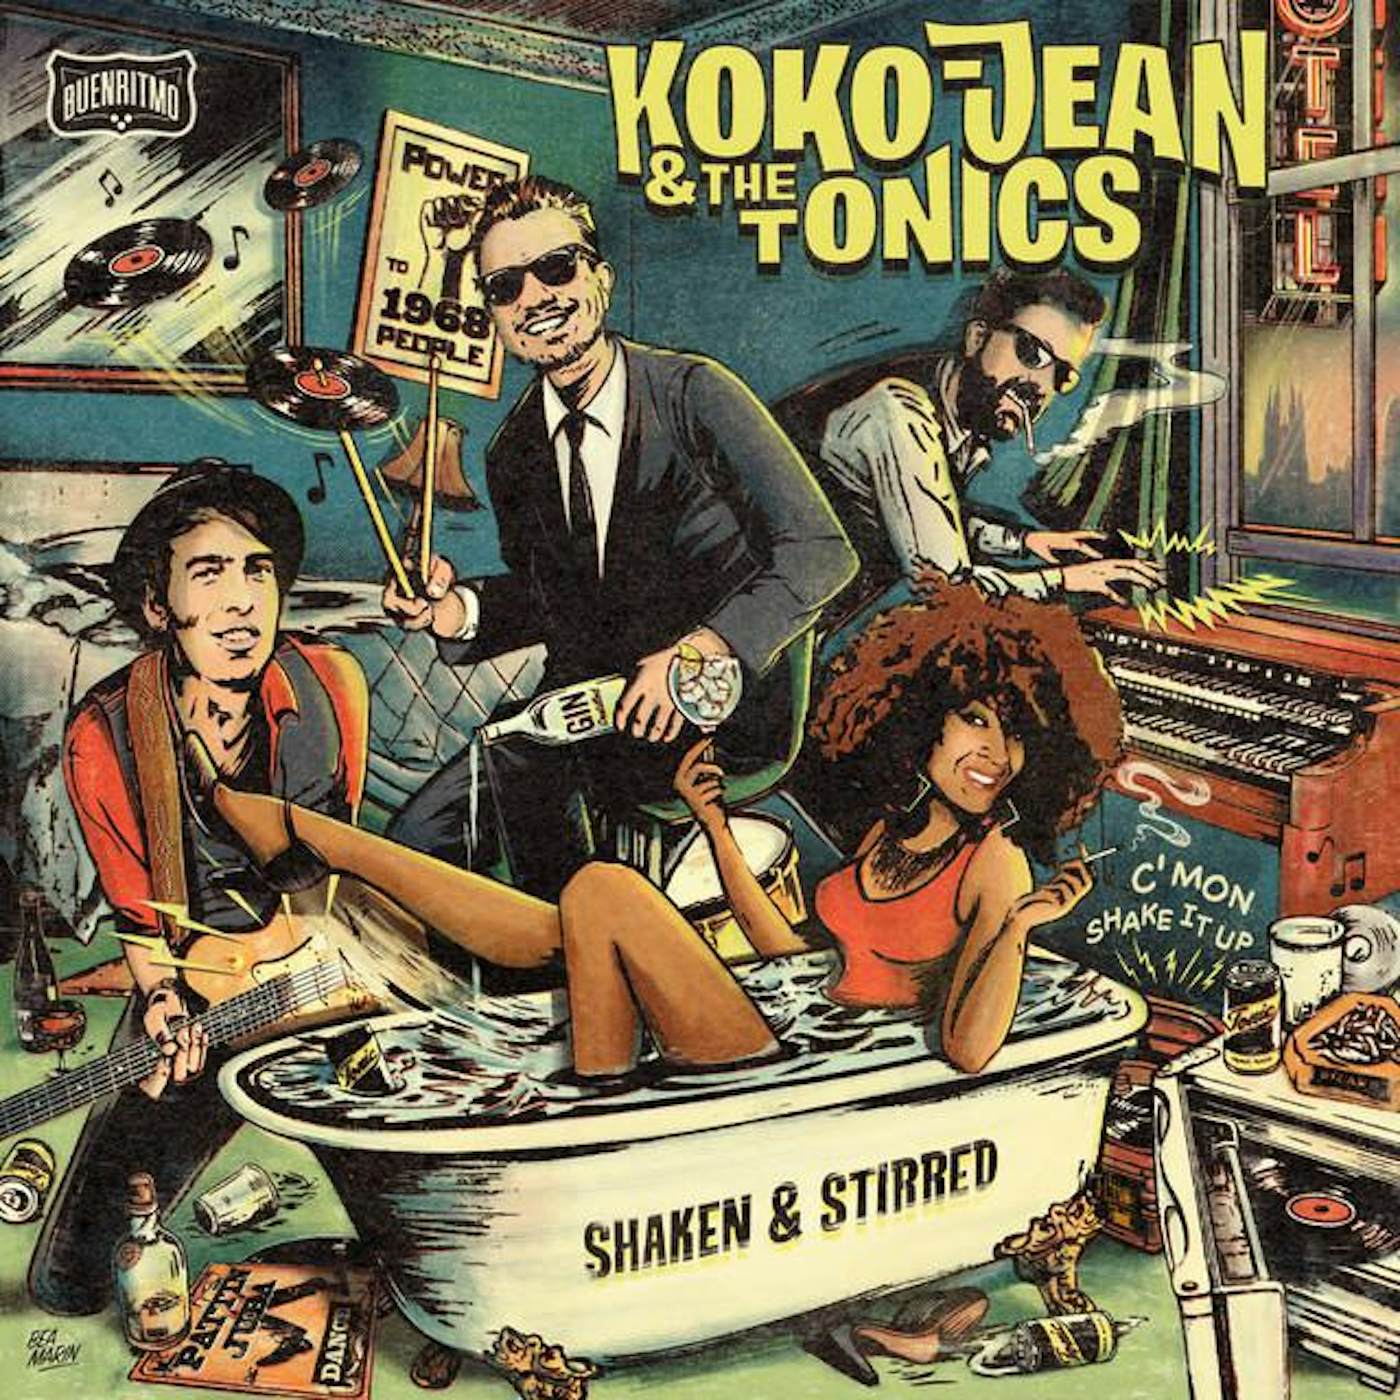 Koko-Jean & The Tonics